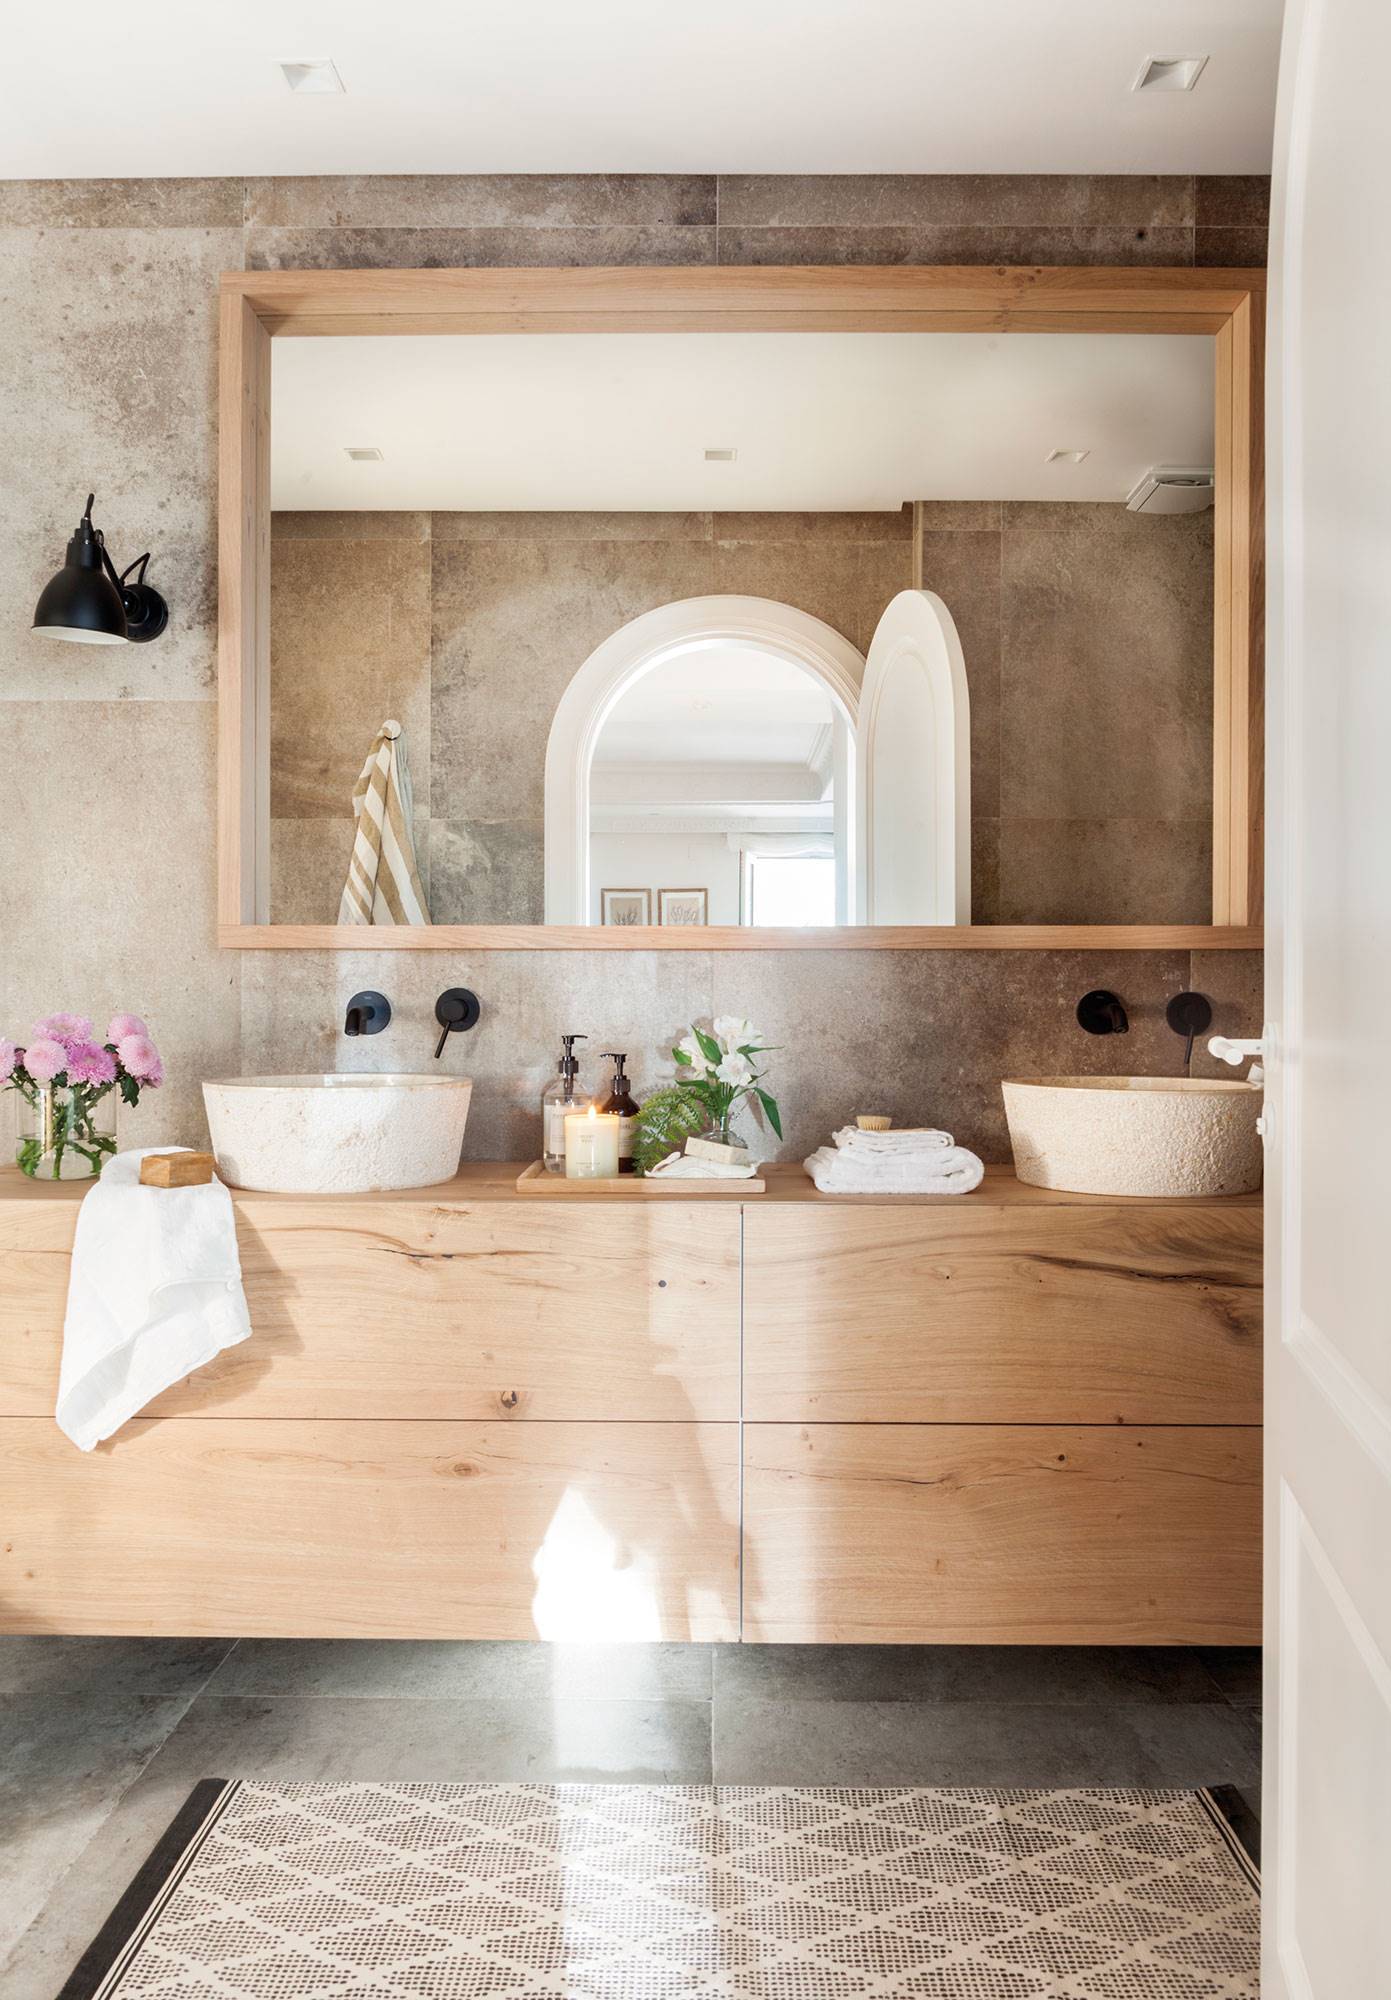 Baño con mueble volado de madera y espejo con marco de madera.